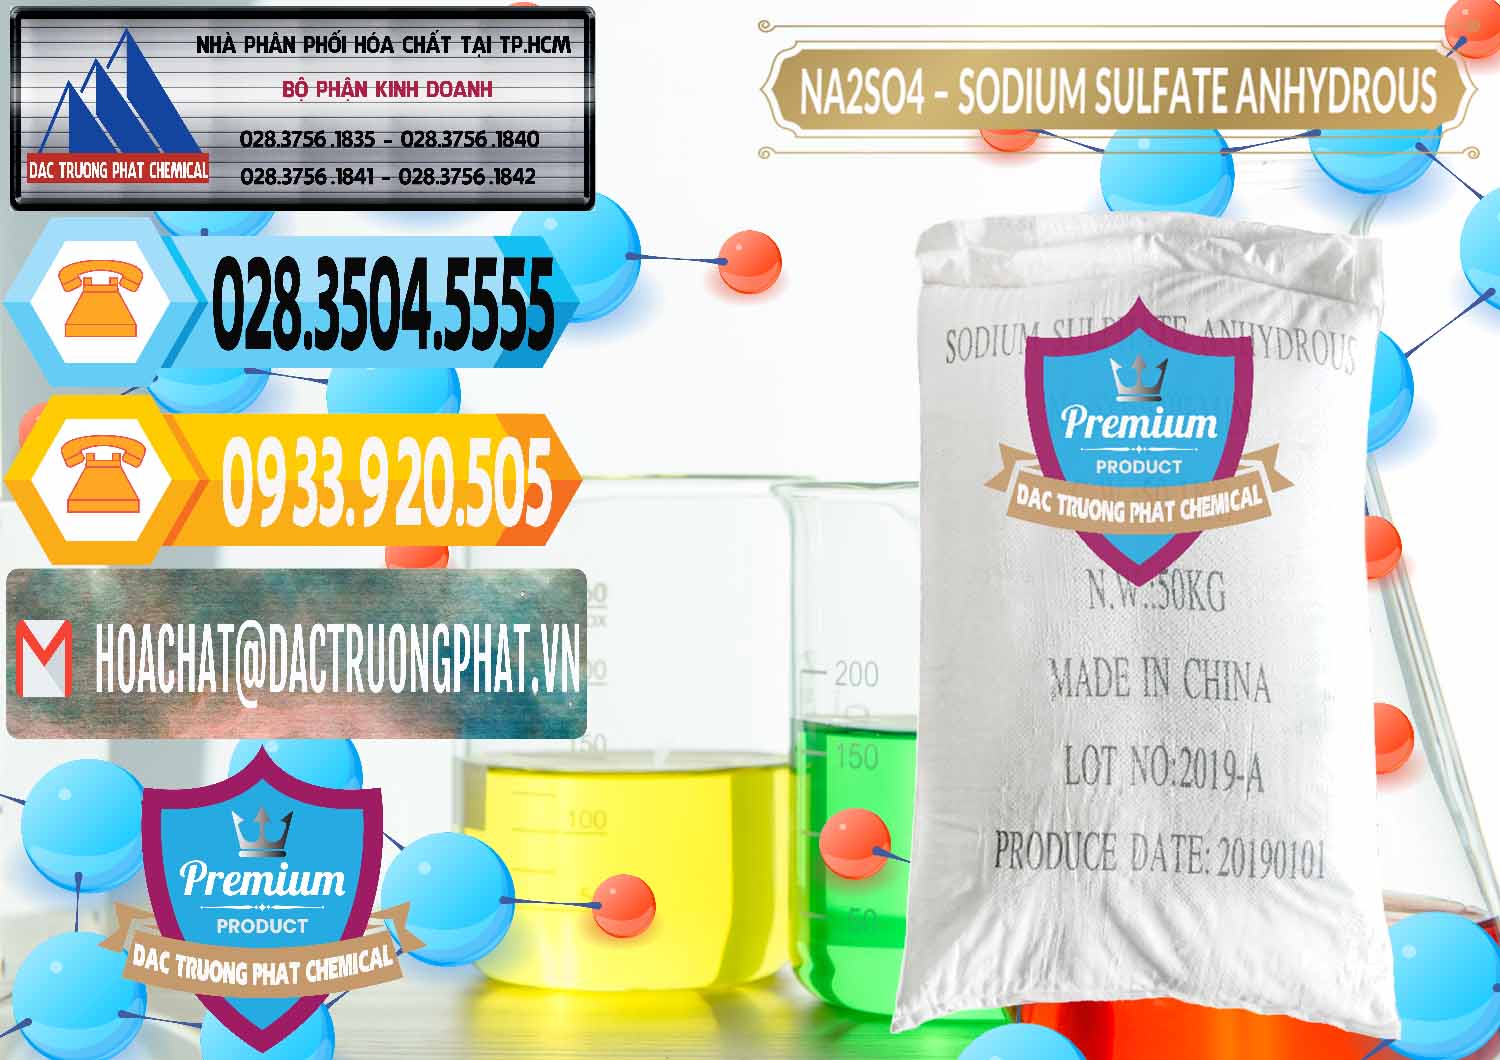 Cty bán & cung cấp Sodium Sulphate - Muối Sunfat Na2SO4 PH 6-8 Trung Quốc China - 0099 - Chuyên cung cấp _ phân phối hóa chất tại TP.HCM - hoachattayrua.net